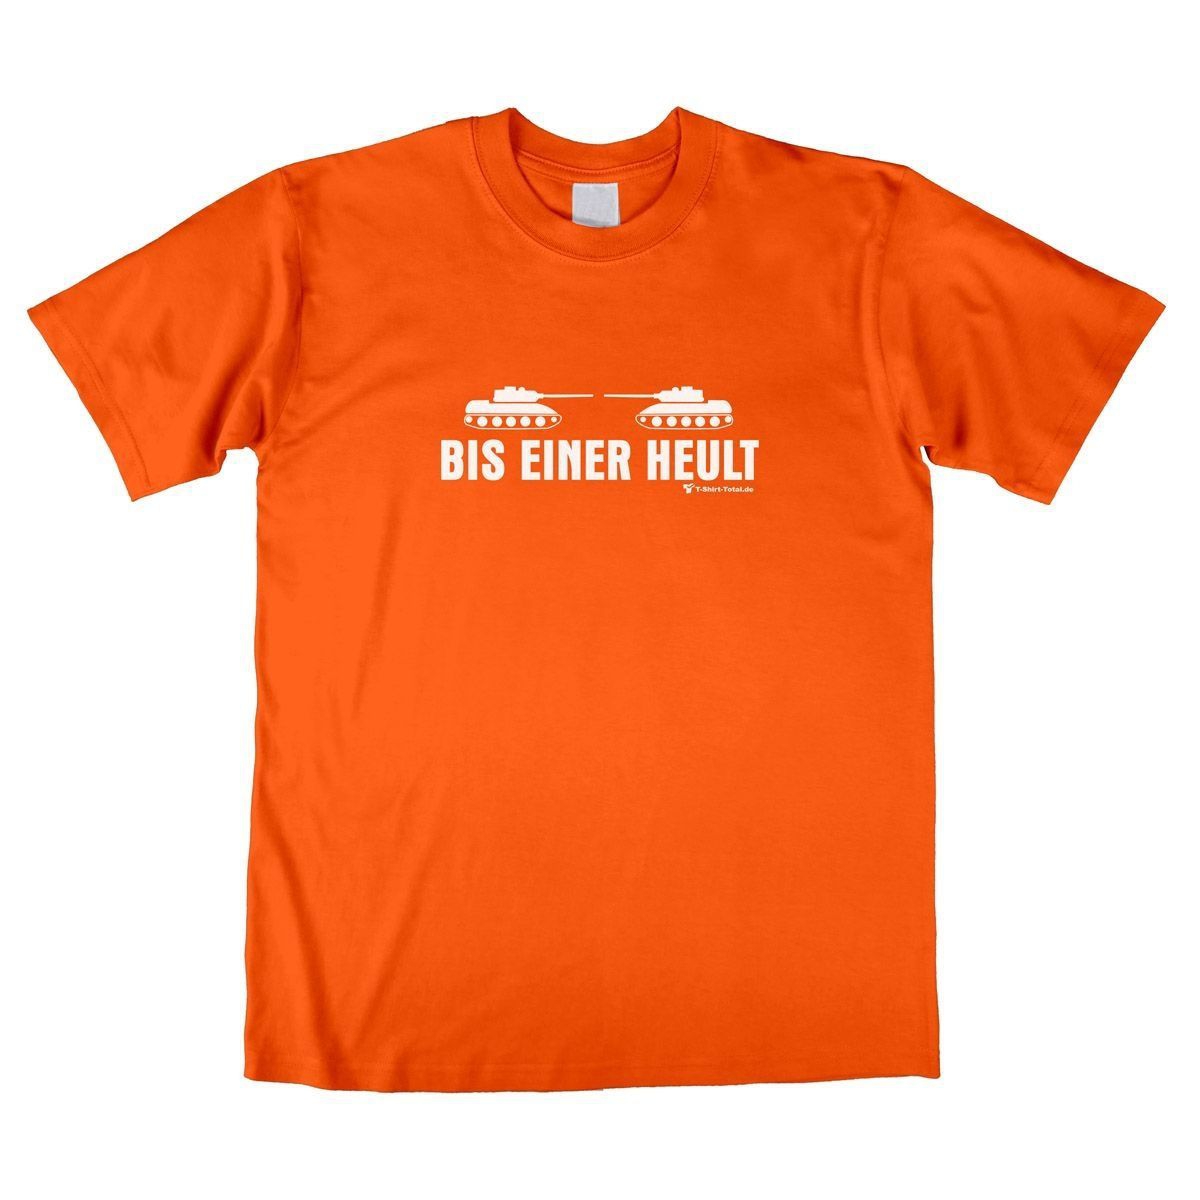 Bis einer heult Unisex T-Shirt orange Small